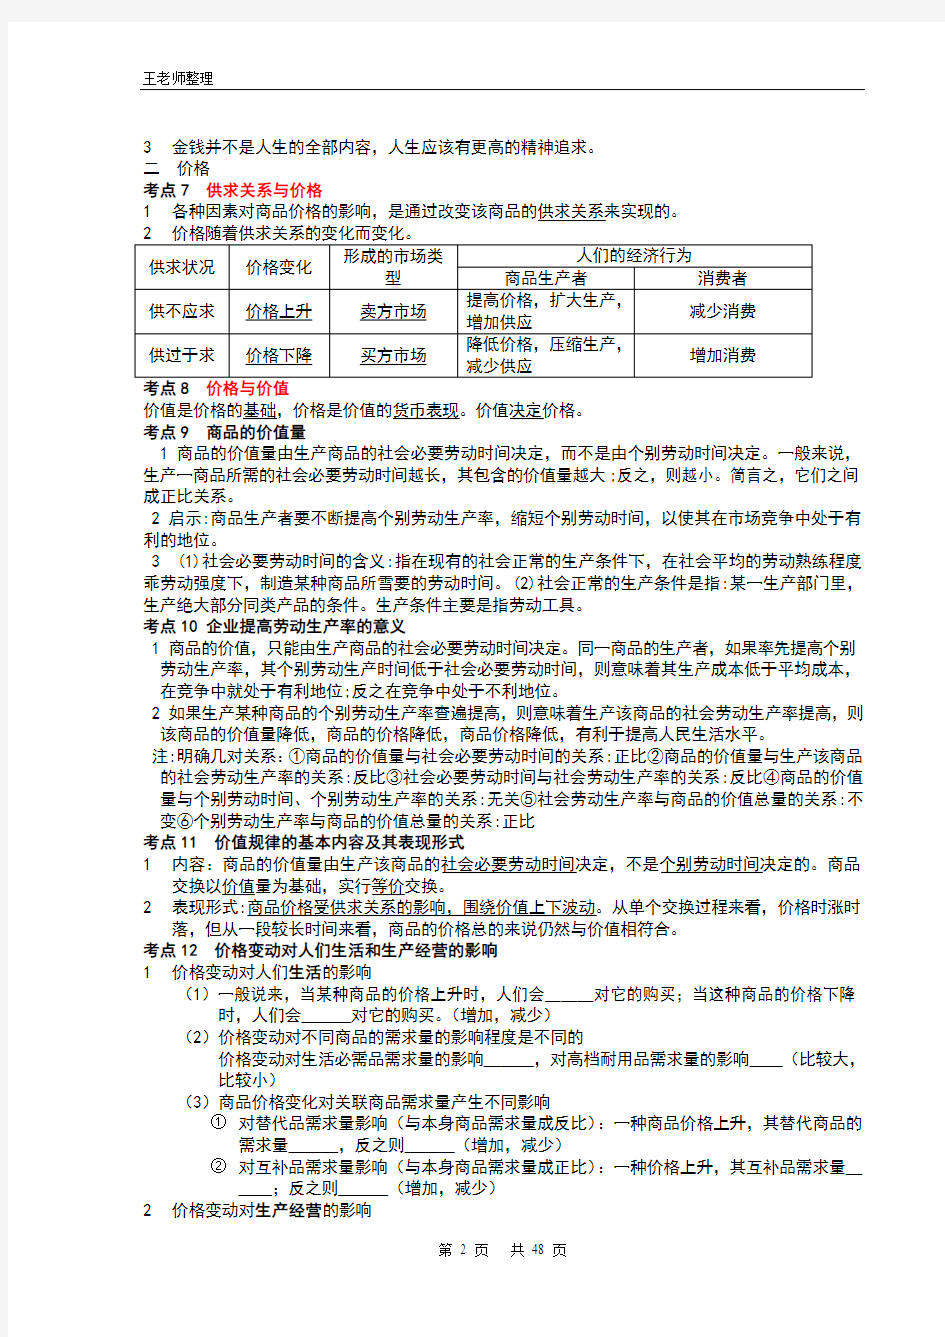 2014年江苏省高考考试说明(政治科)考点解读(经典打印版)